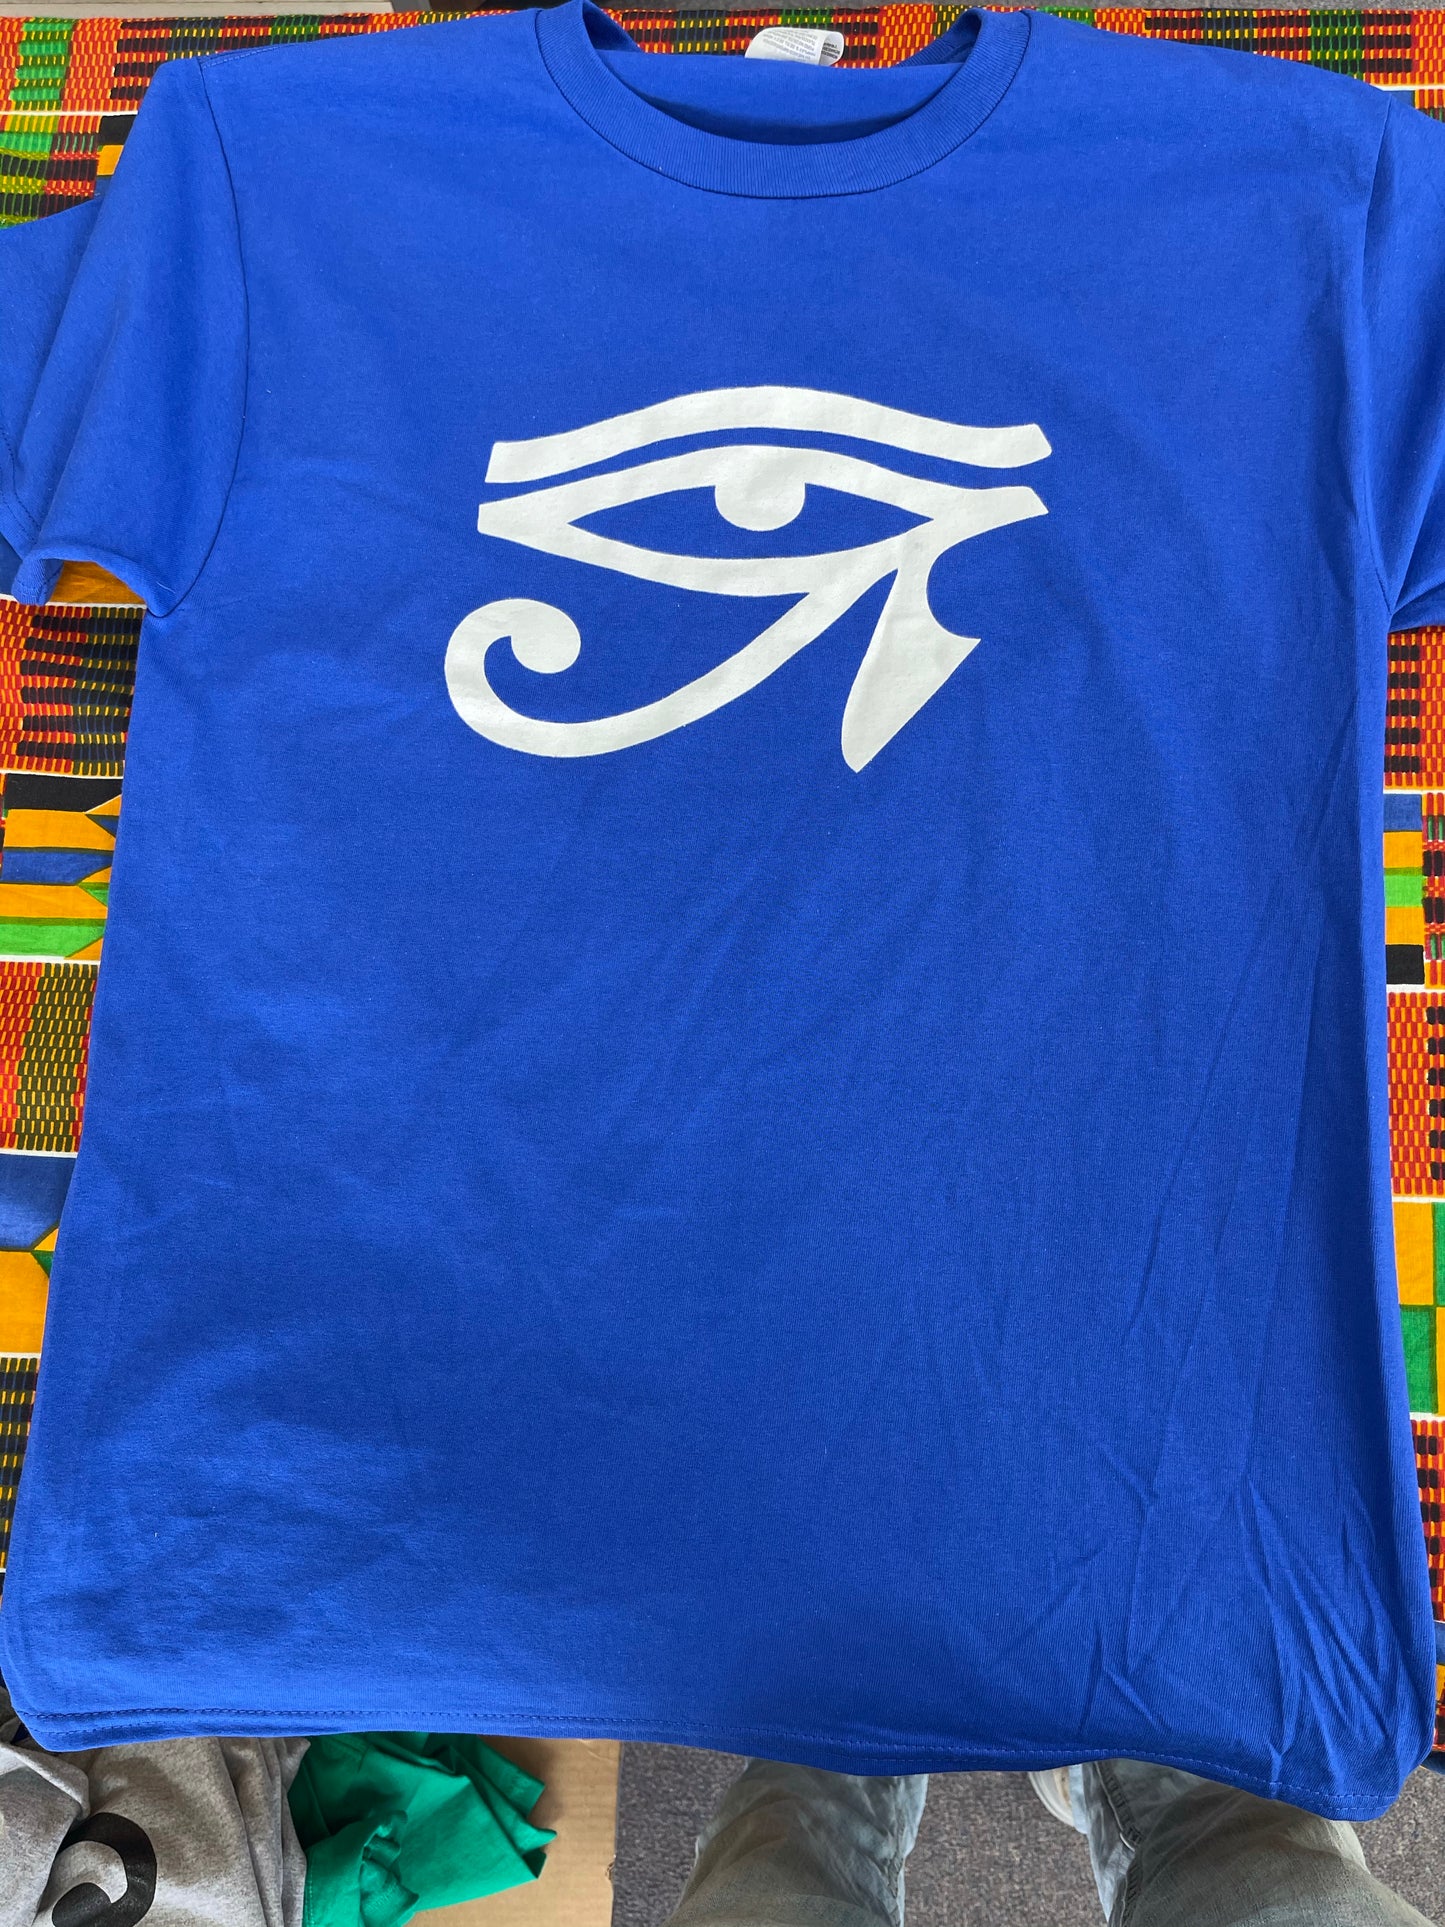 Eye of Ra T-shirt Blue